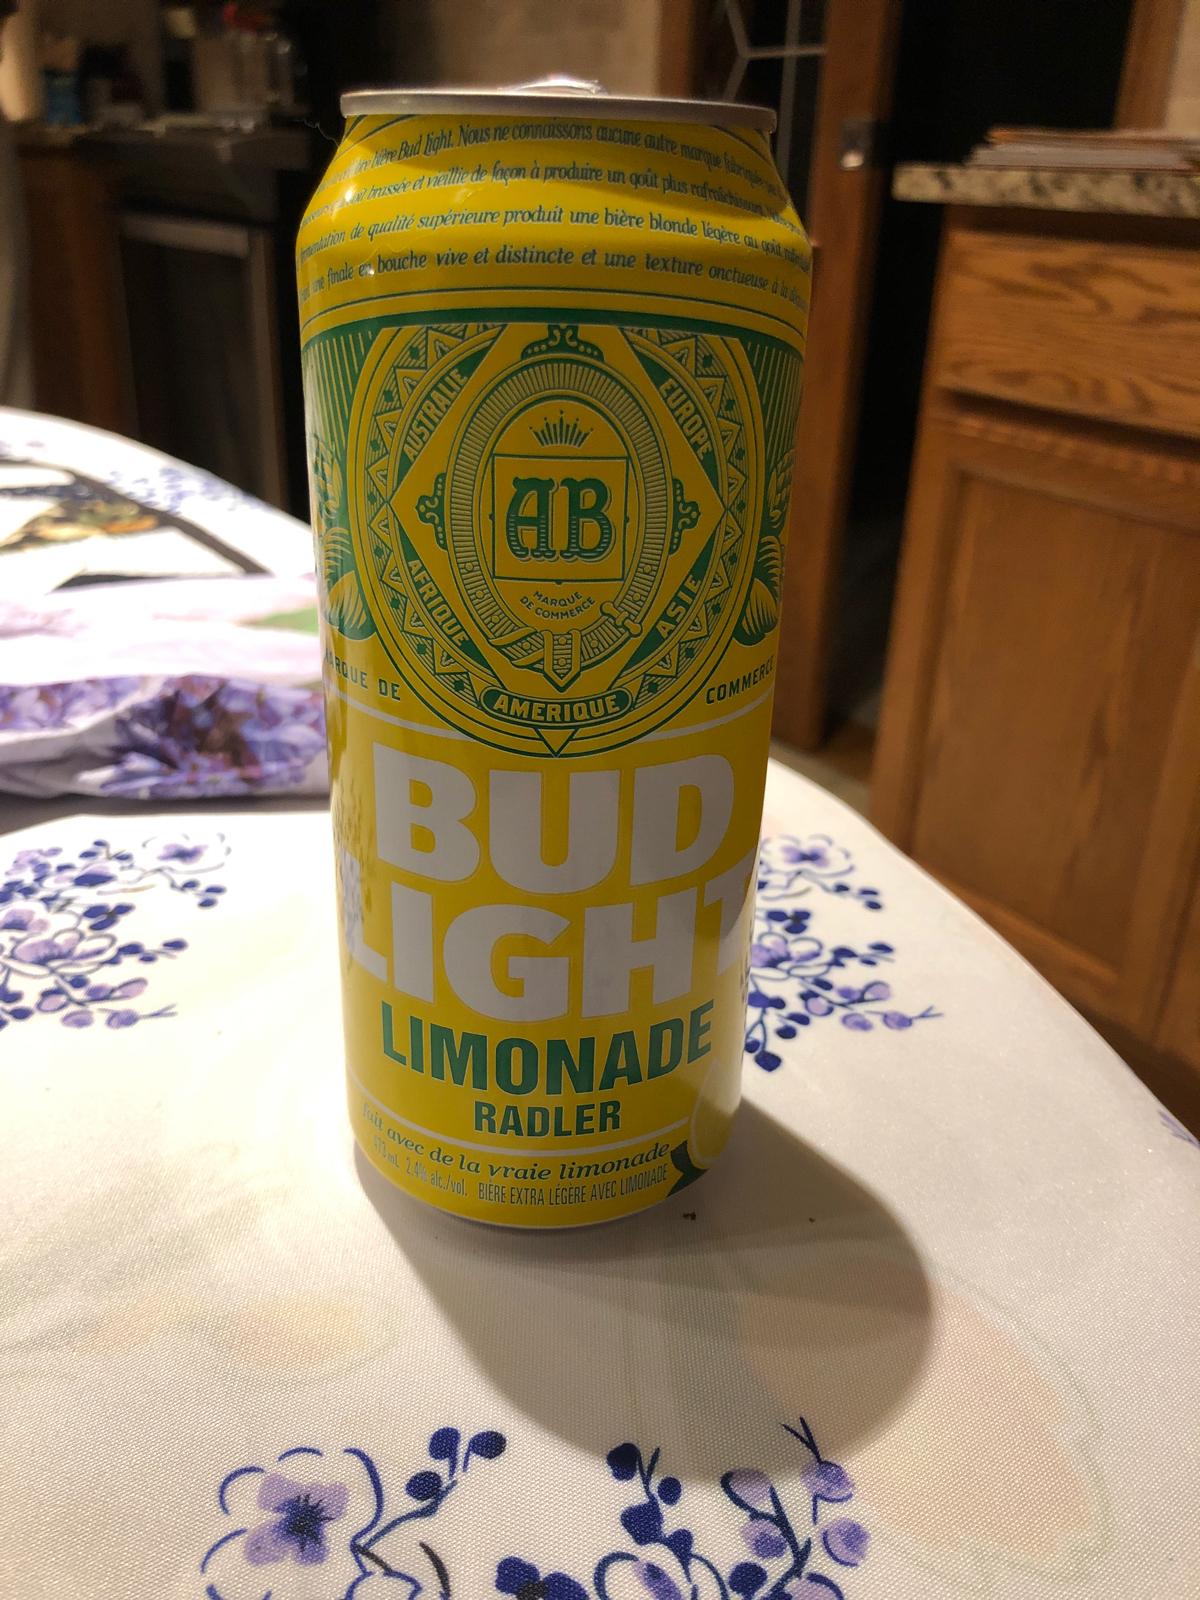 Bud Light Limonade Radler